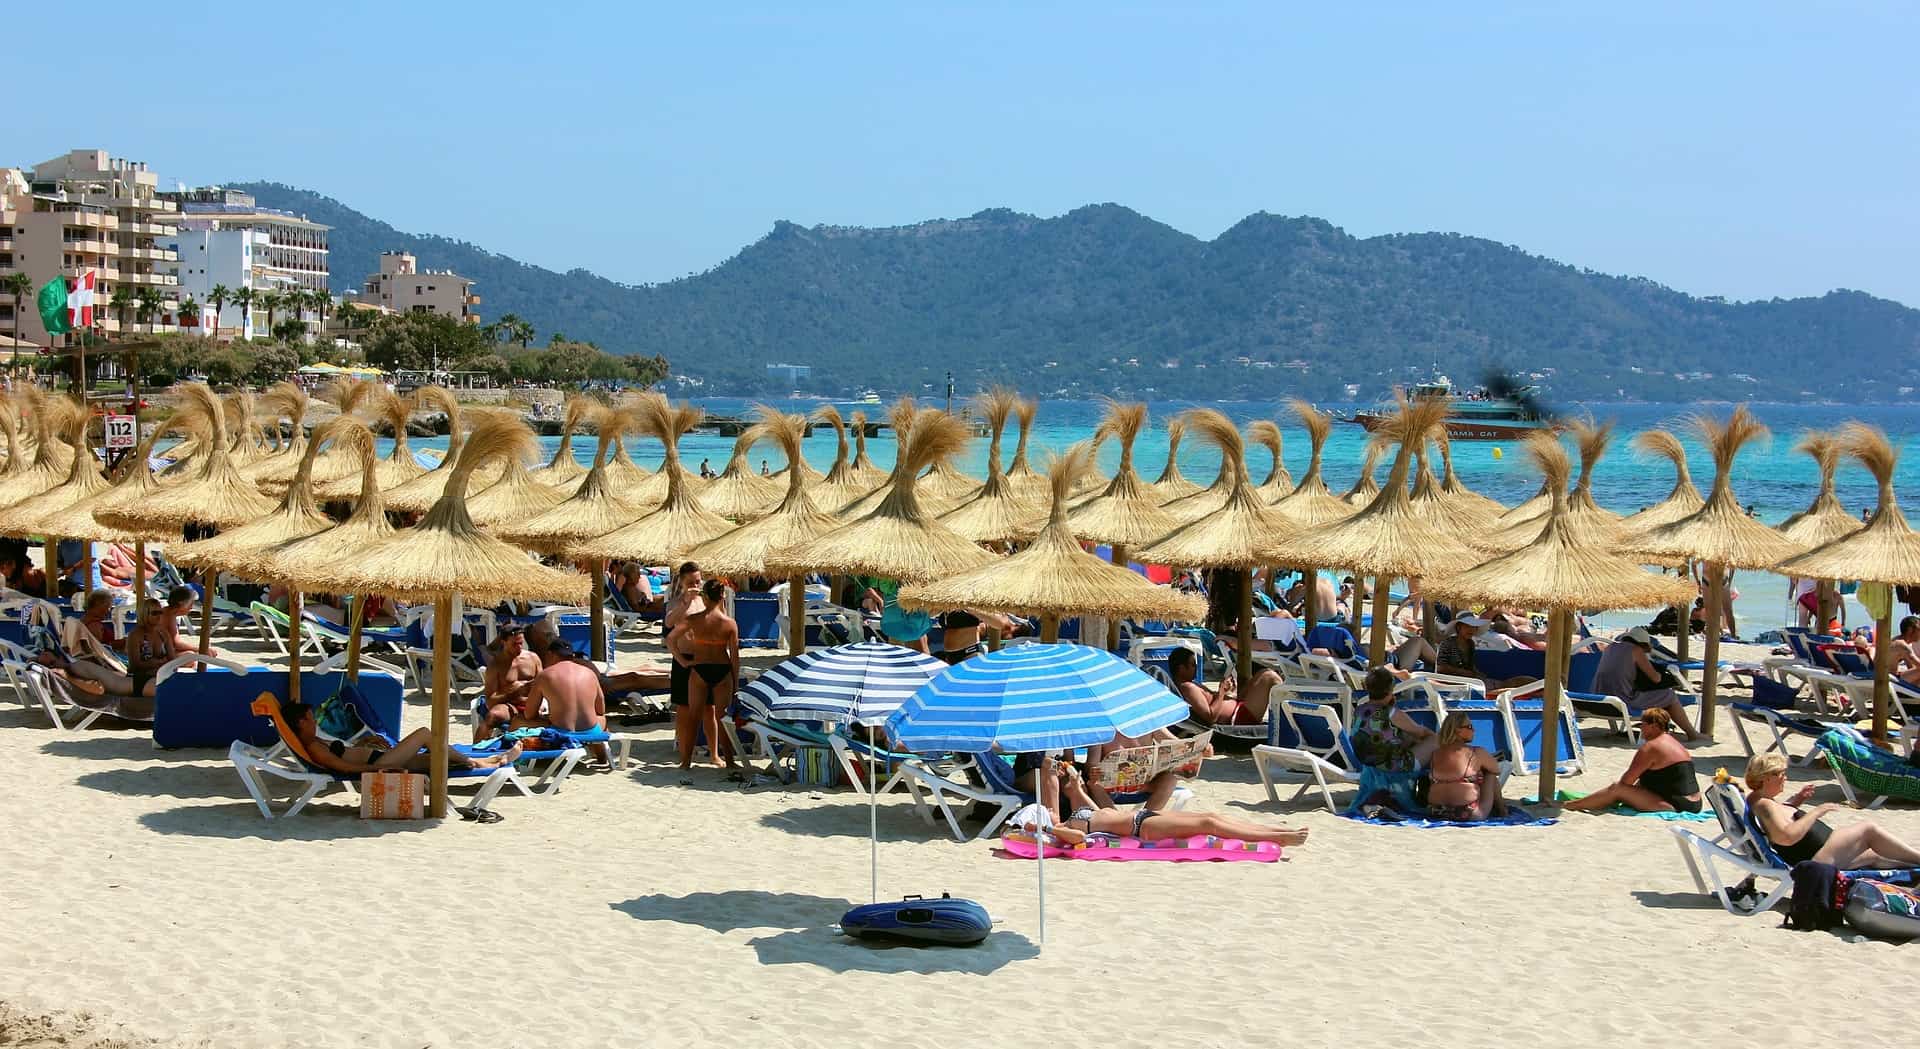 Der Strand im osten der Insel bei Cala Millor - Balearen Urlaub über drei Wochen